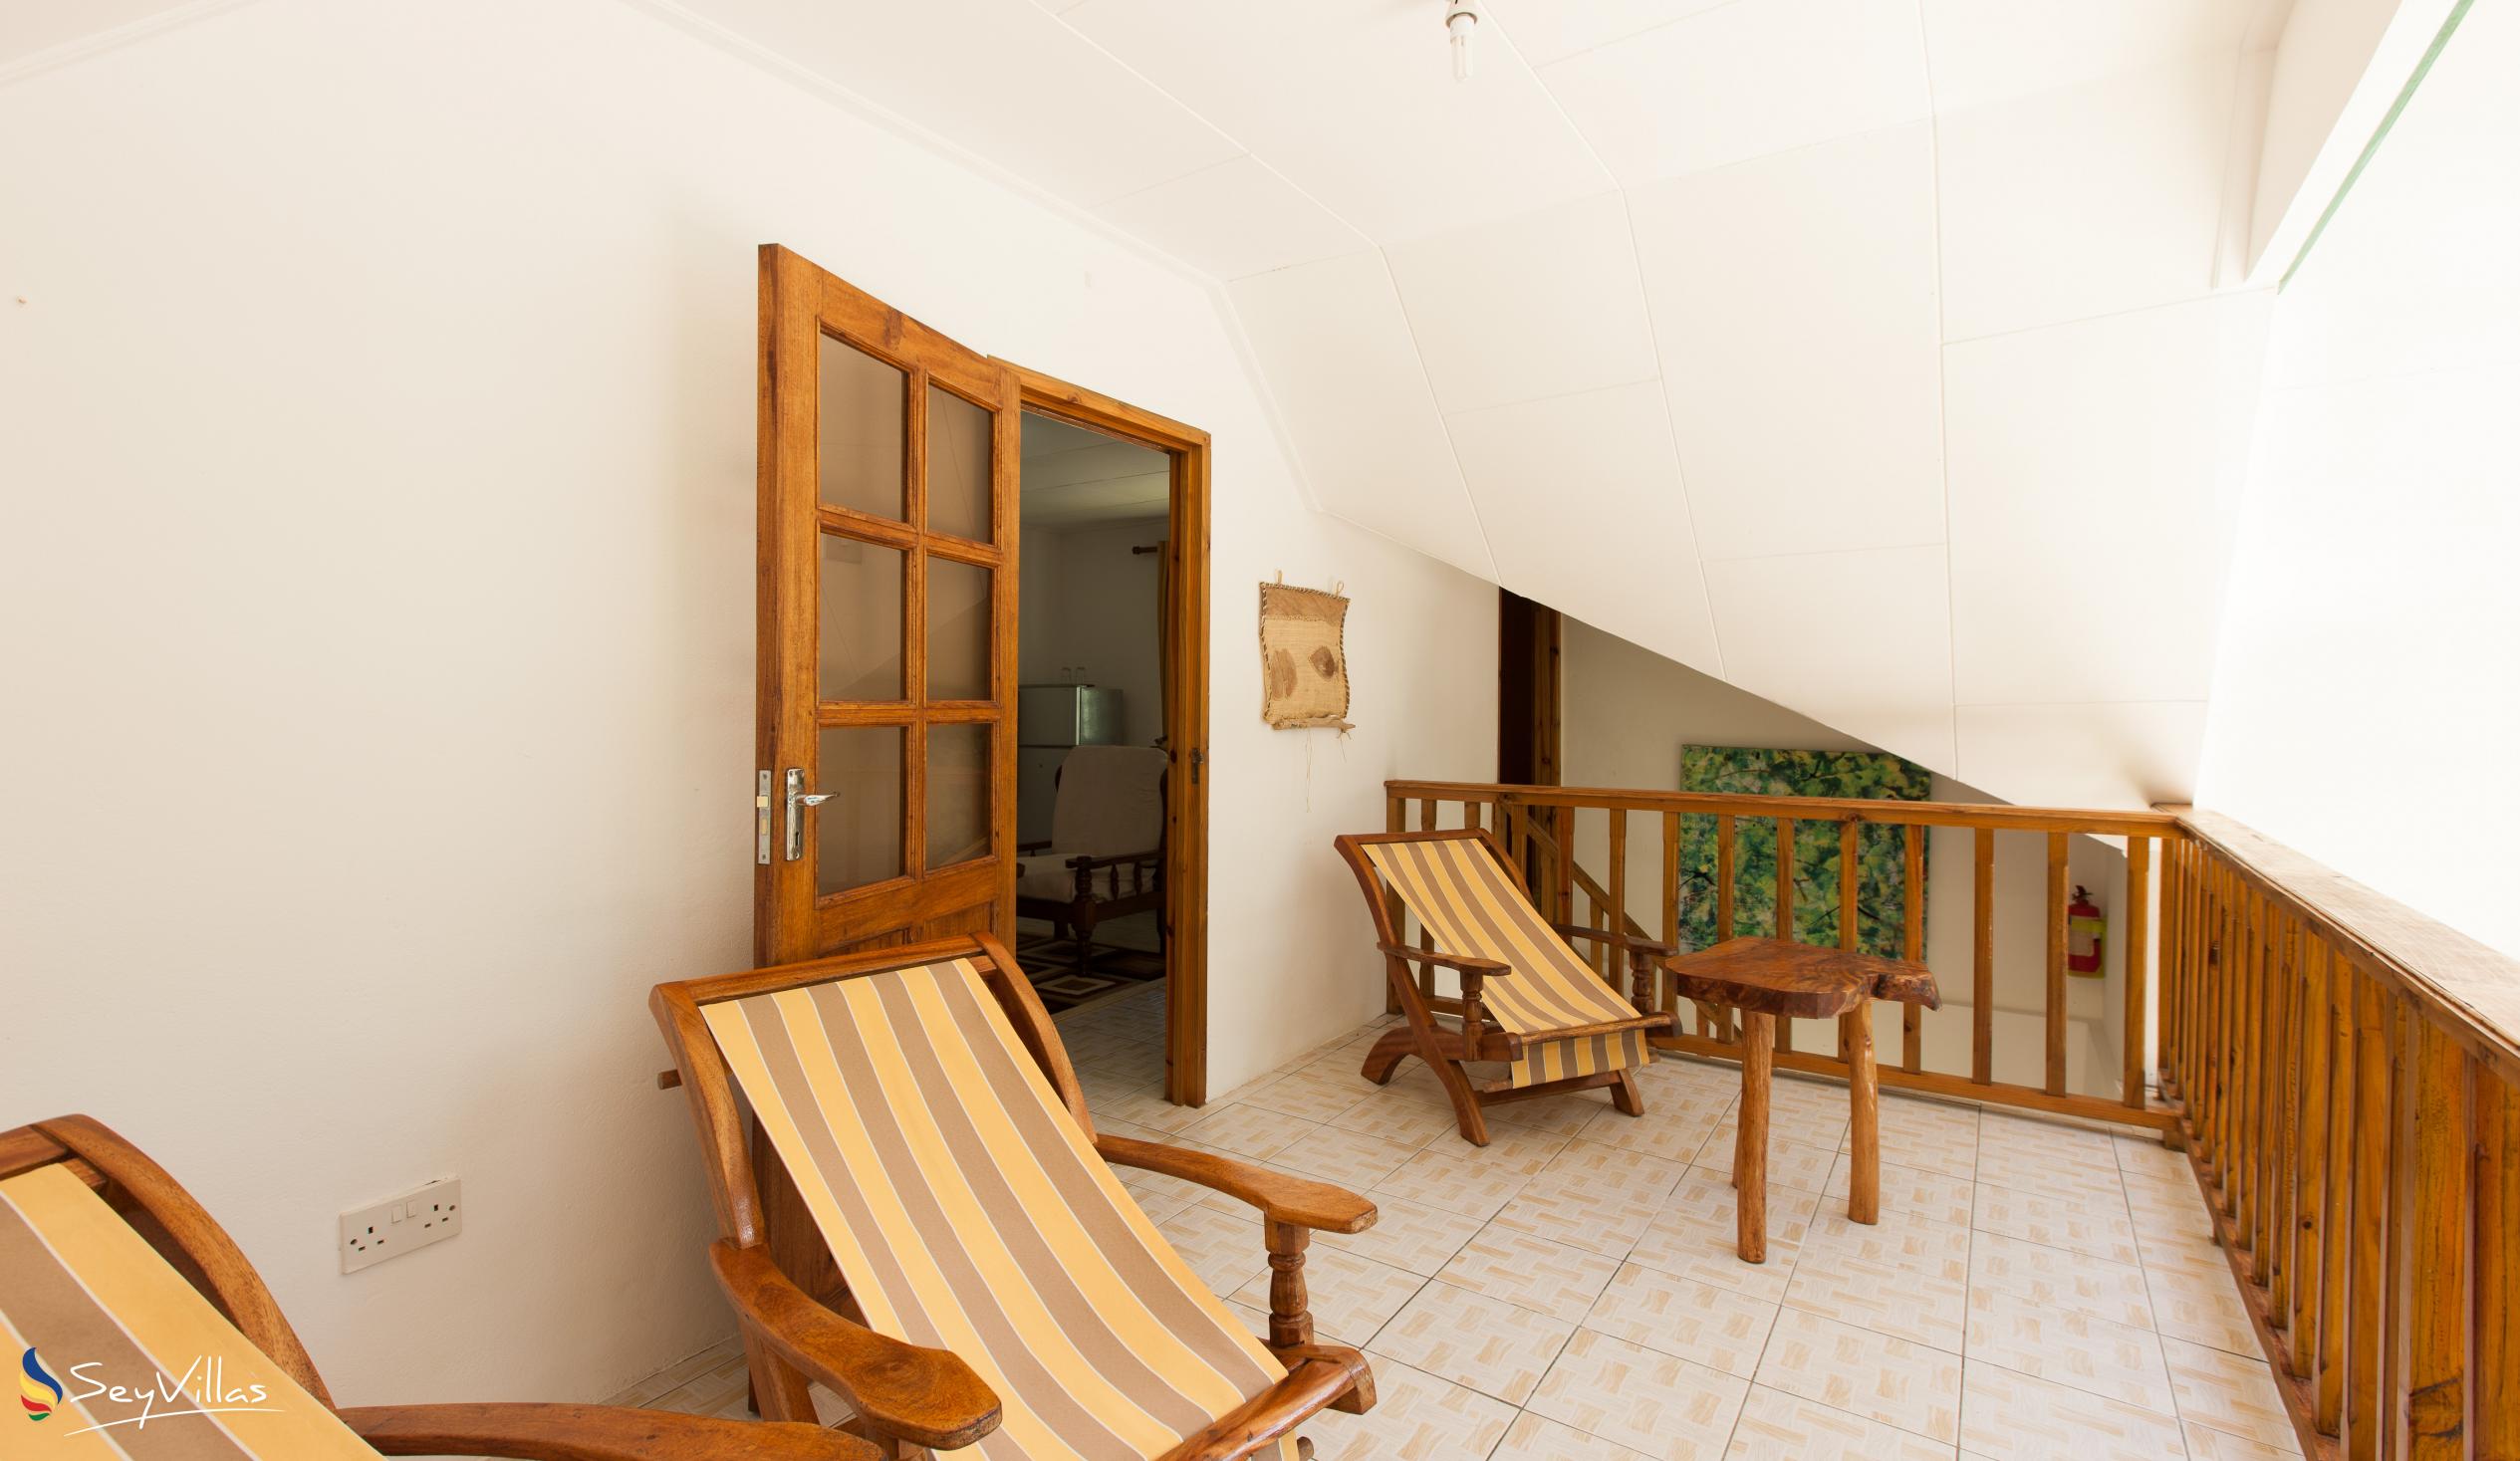 Foto 47: Tannette's Villa - Interno - La Digue (Seychelles)